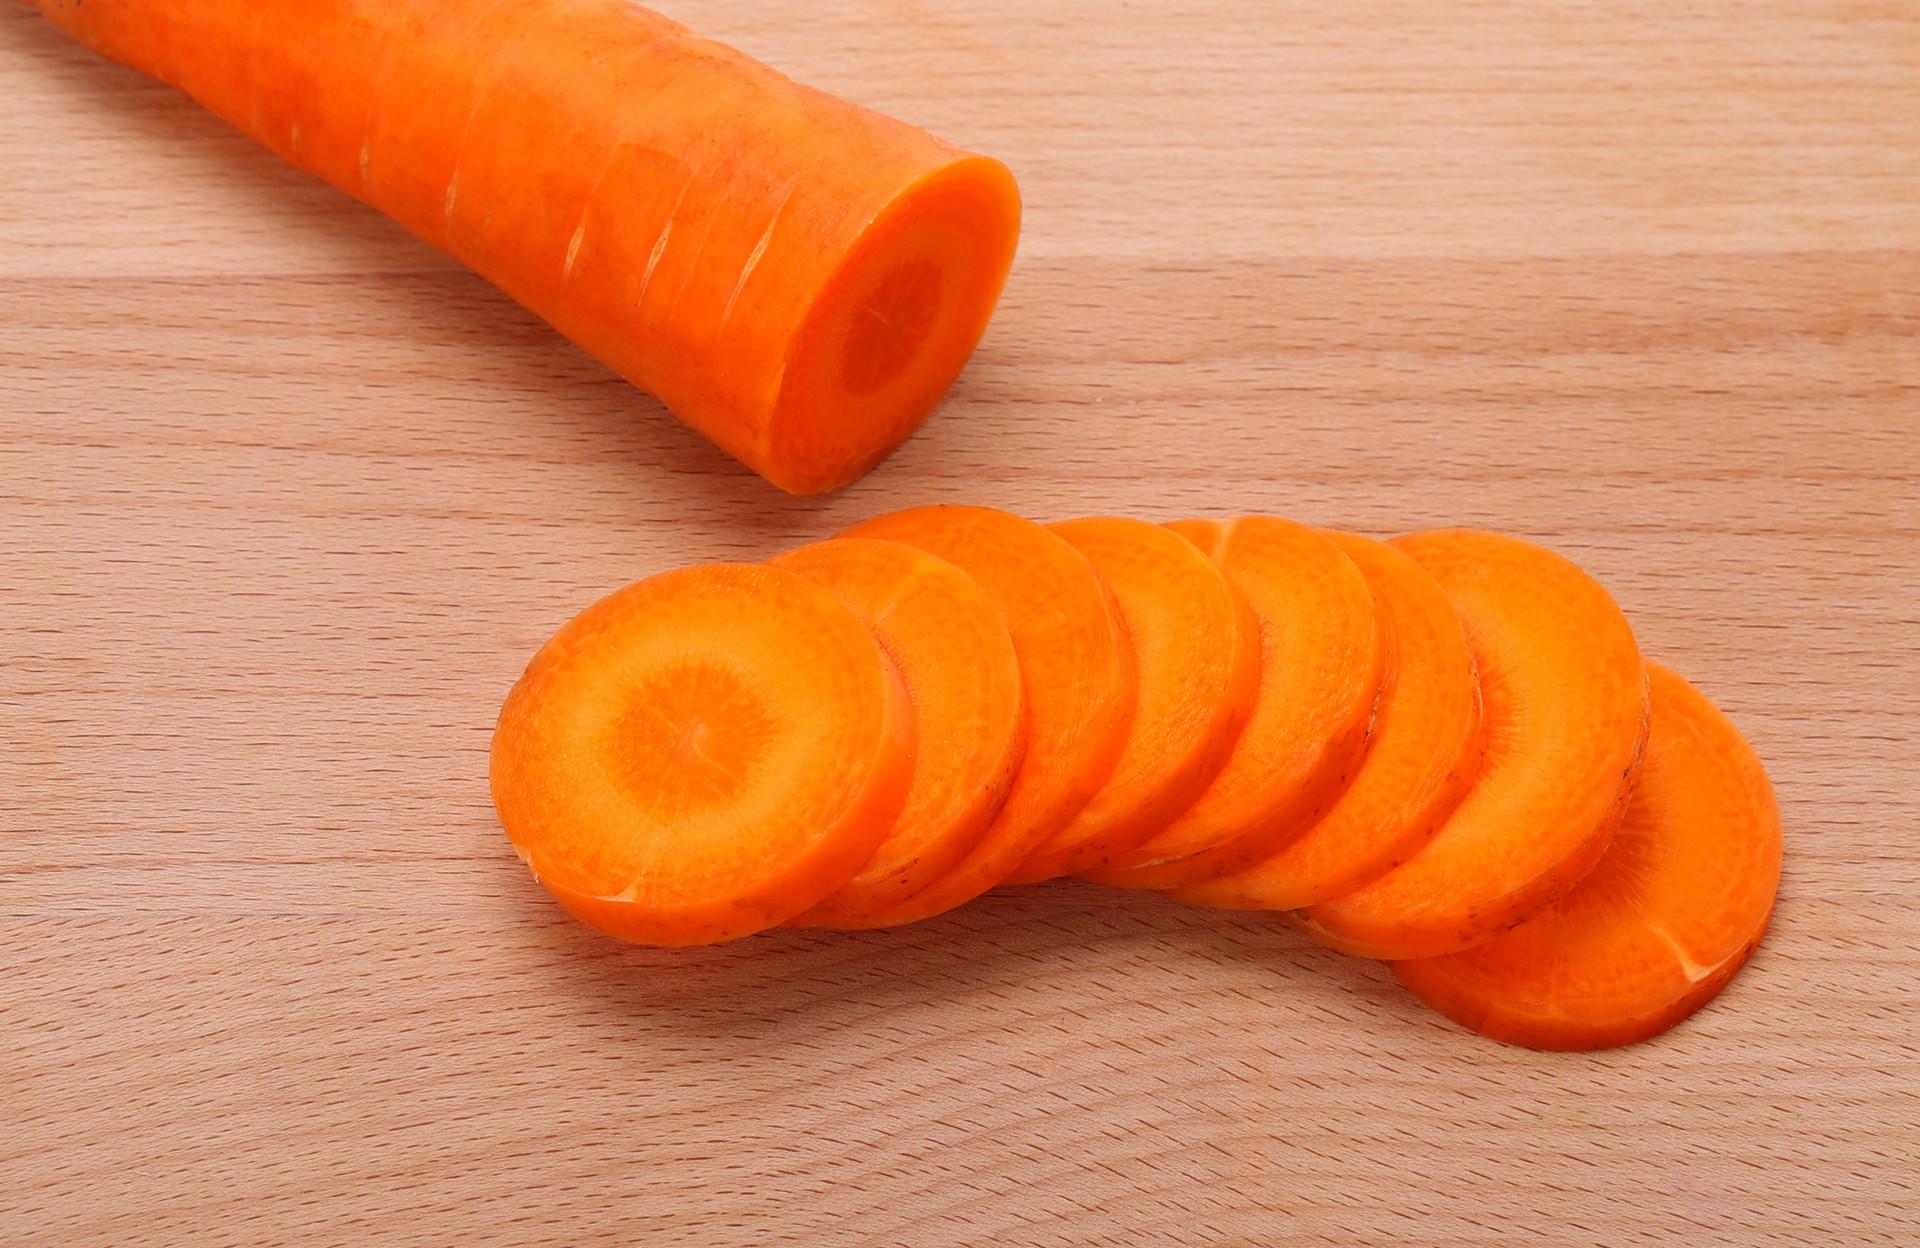 红萝卜和白萝卜哪个营养价值高